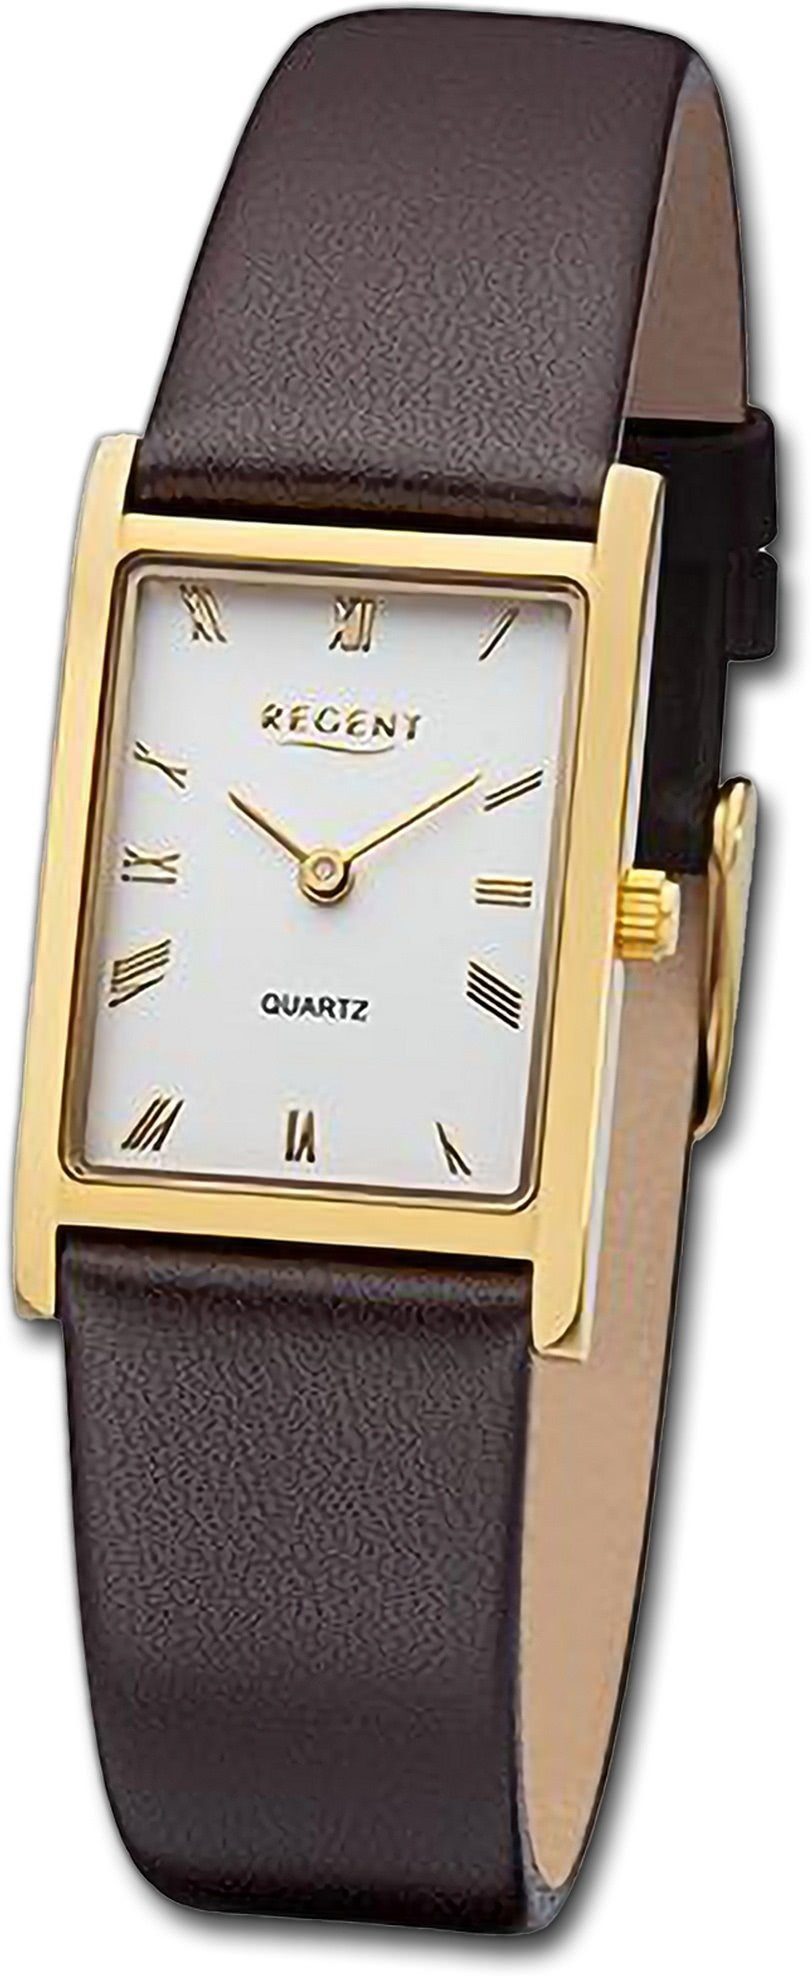 Regent Quarzuhr Regent Damen Armbanduhr Analog, Damenuhr Lederarmband dunkelbraun, rundes Gehäuse, groß (ca. 22x34mm)